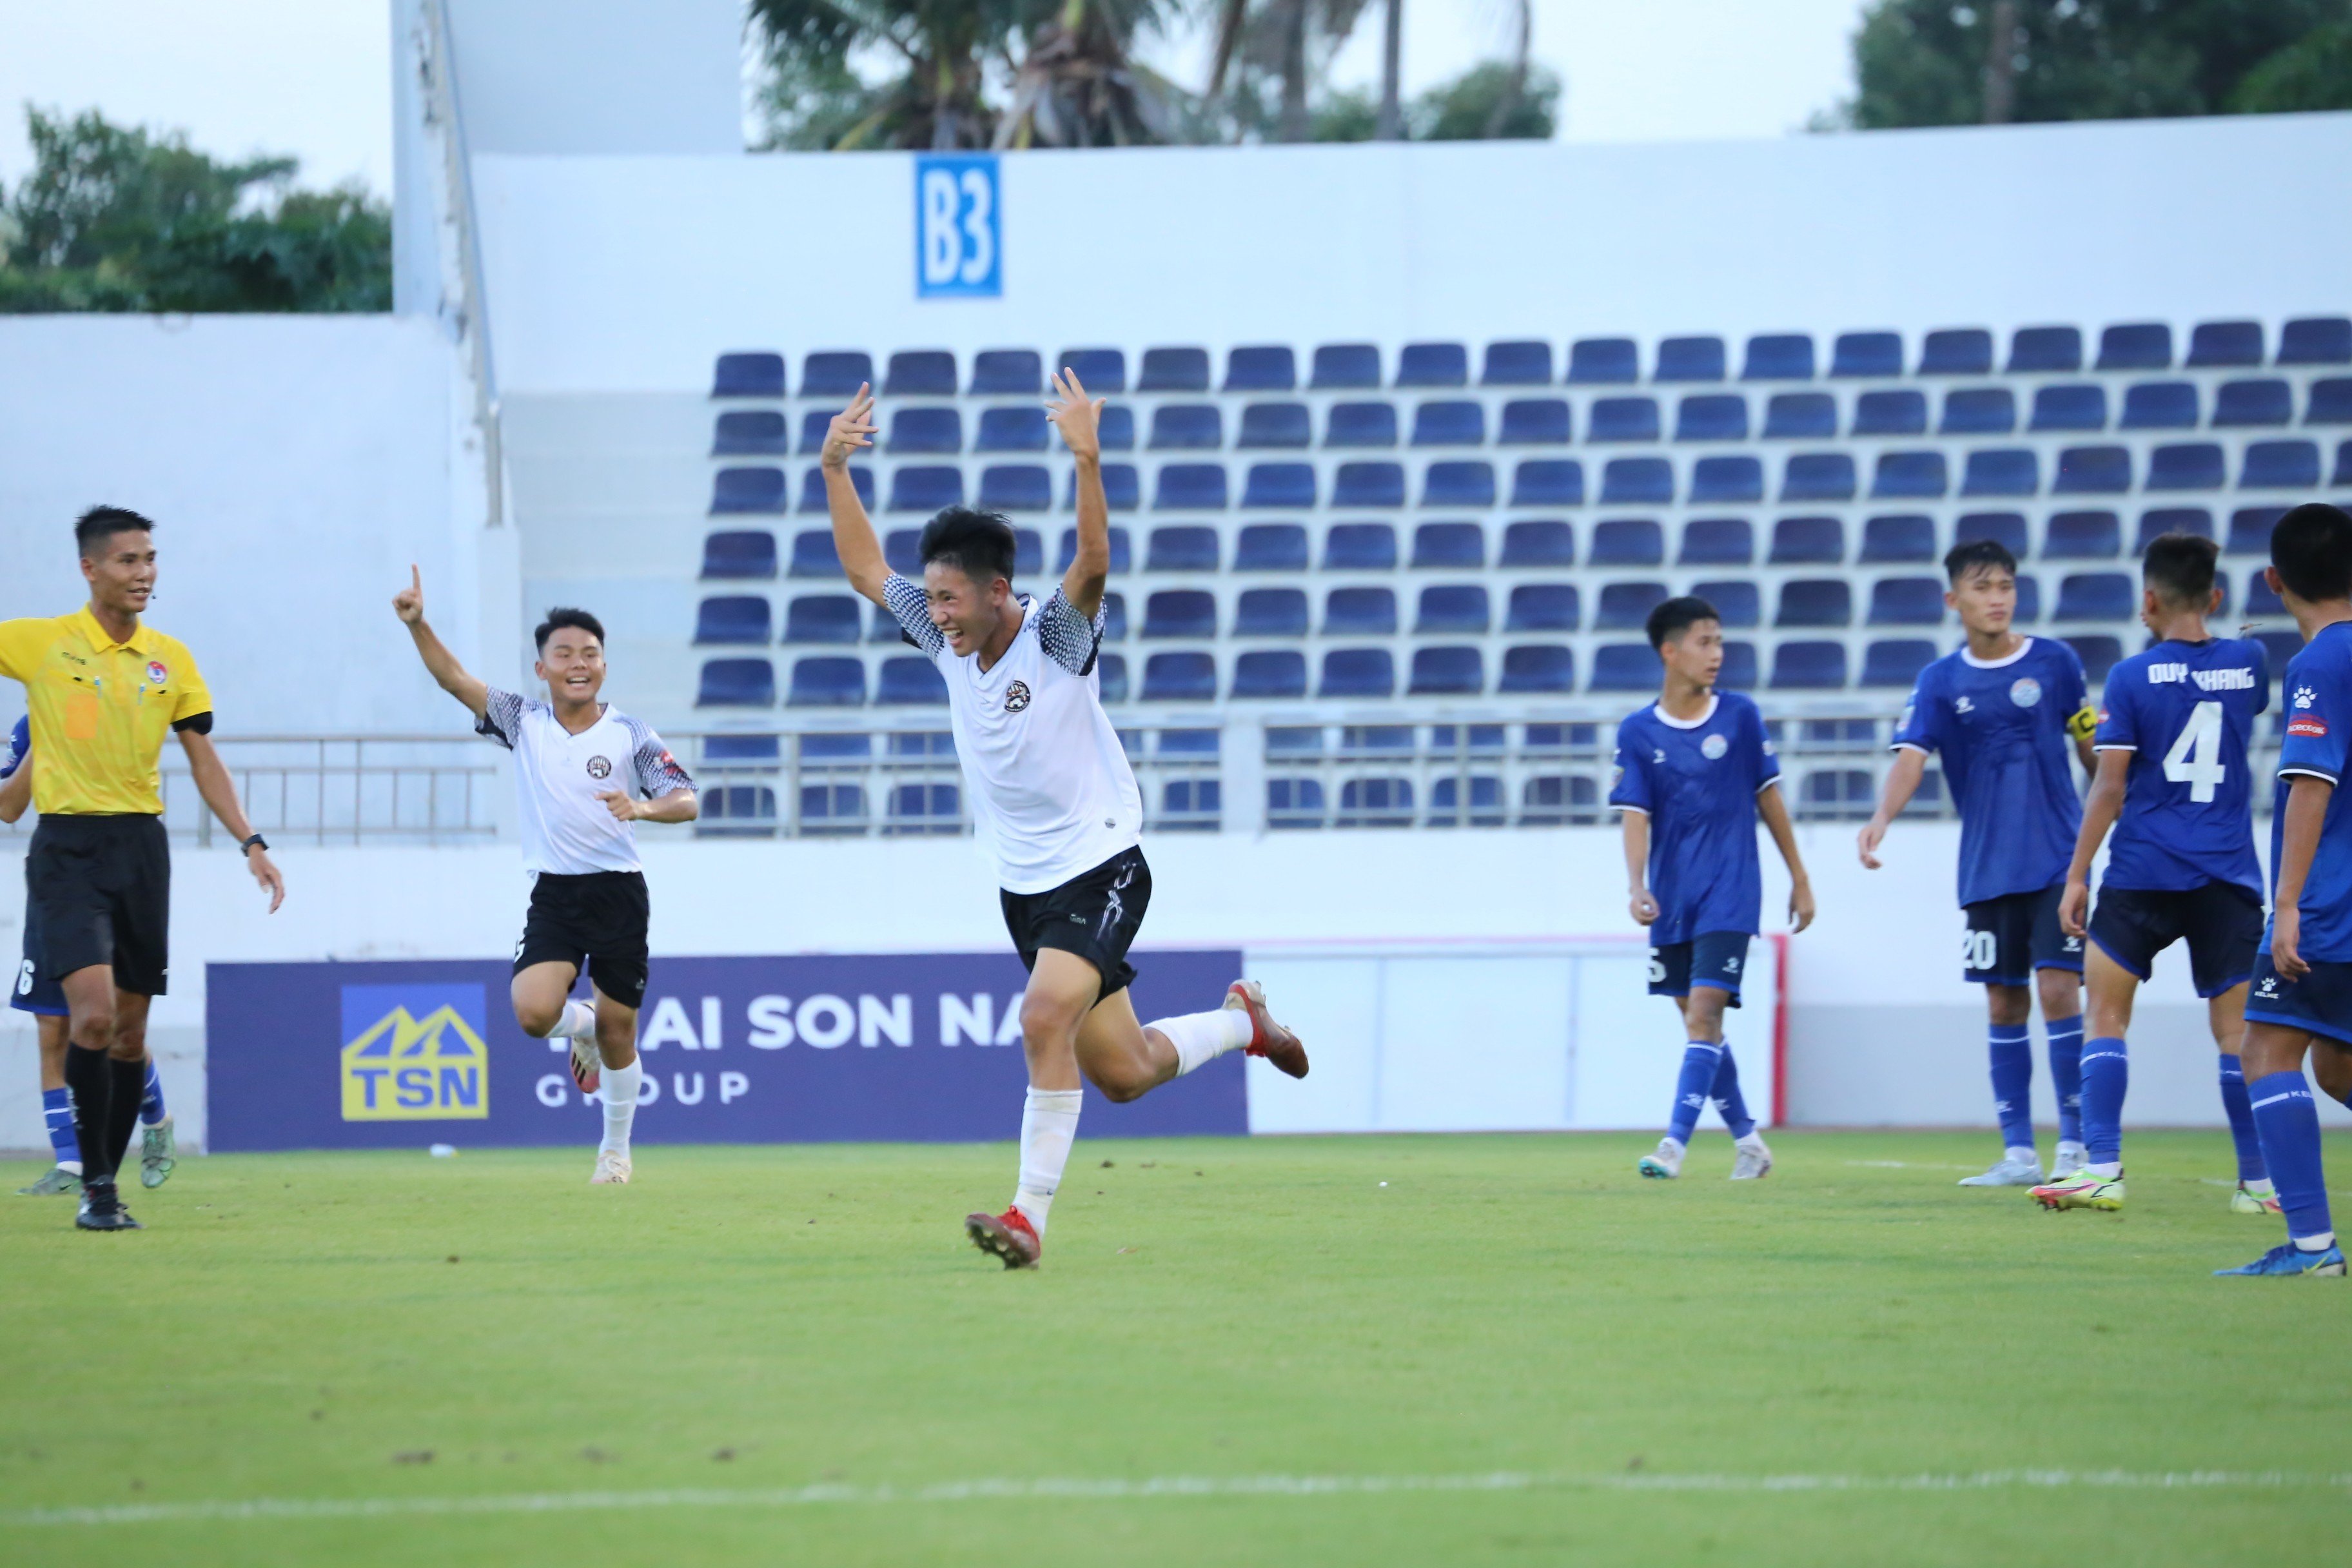 Các cầu thủ U15 Bà Rịa - Vũng Tàu ăn mừng sau bàn thắng.